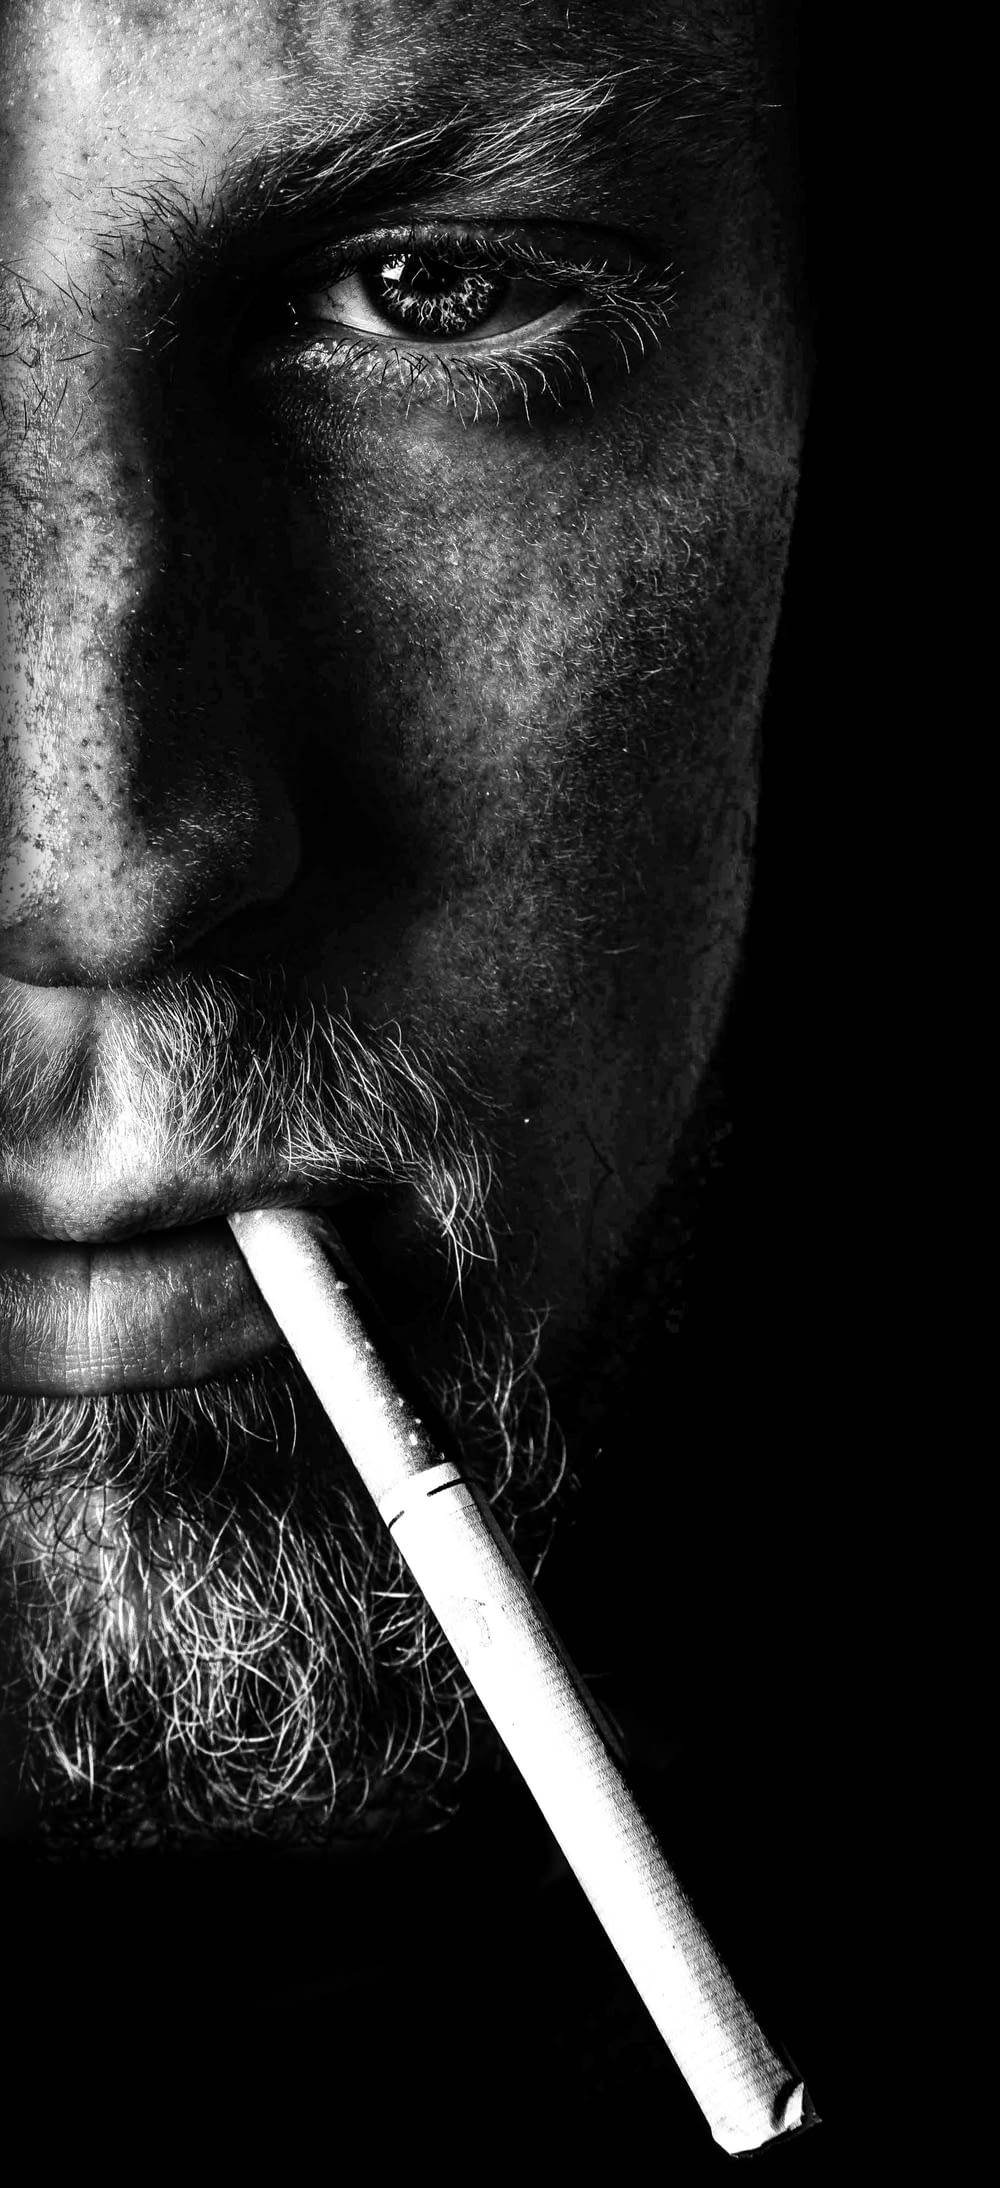 uomo che fuma sigaretta in fotografia in scala di grigi